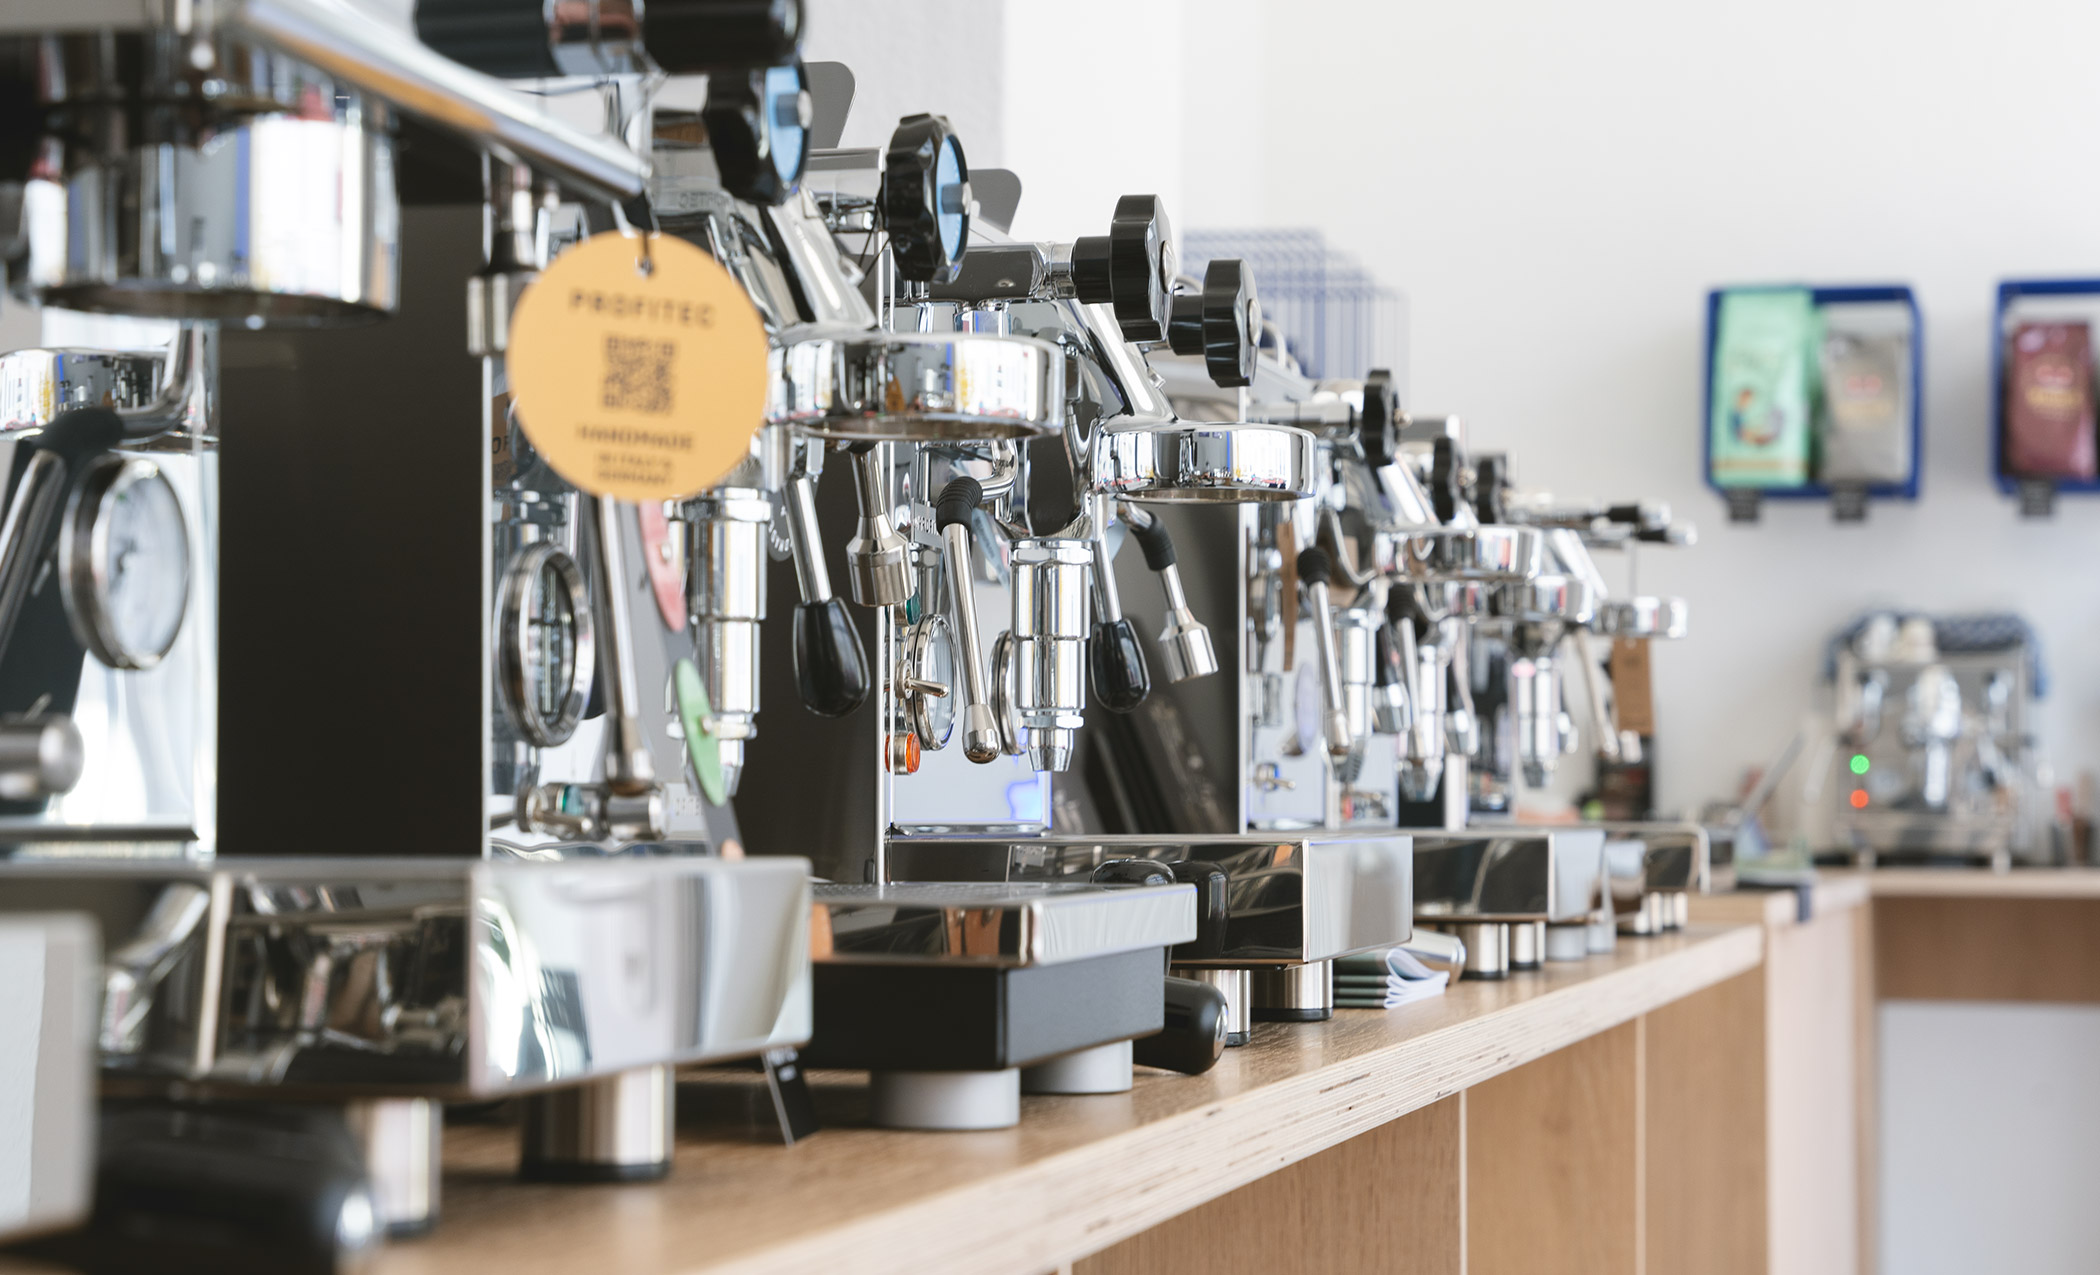 Espressowerk – Ladengeschäft für Siebträgermaschinen